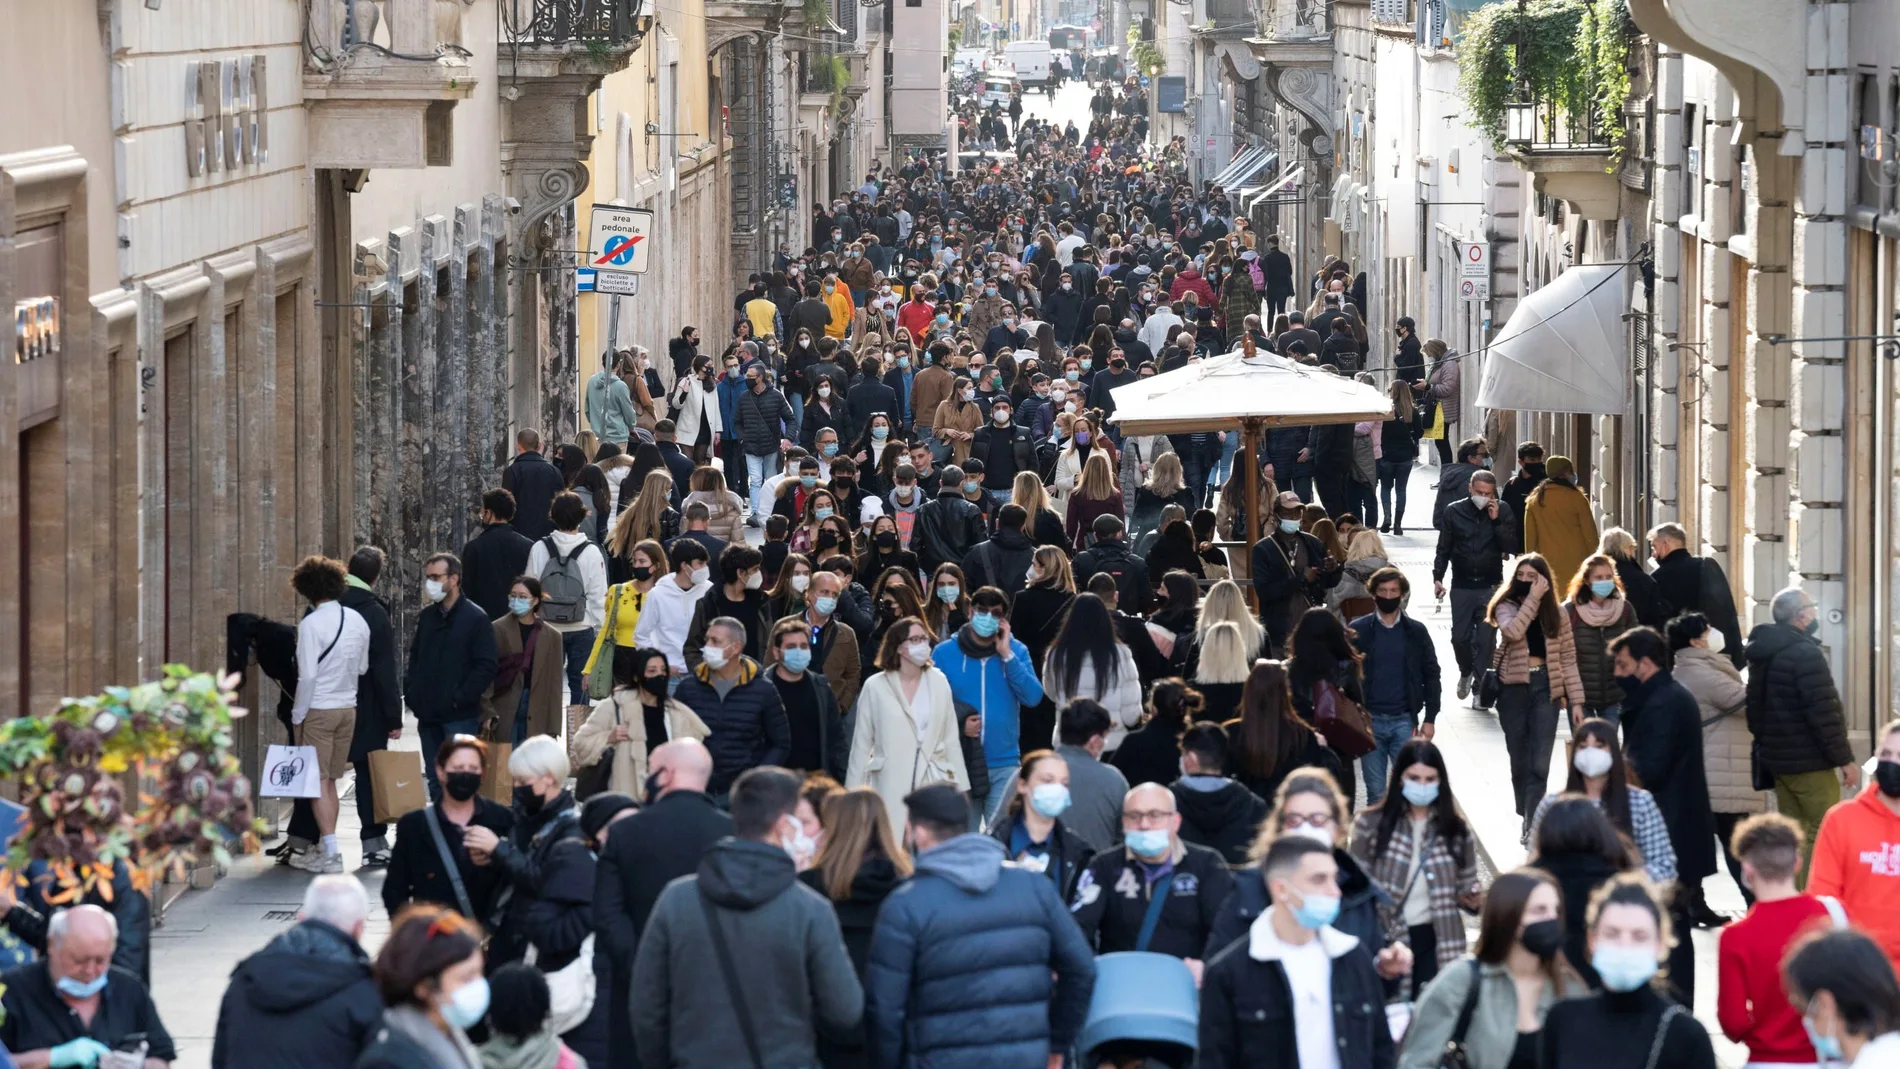 Centos de personas caminan por una abarrotada calle del centro de Roma (Italia)